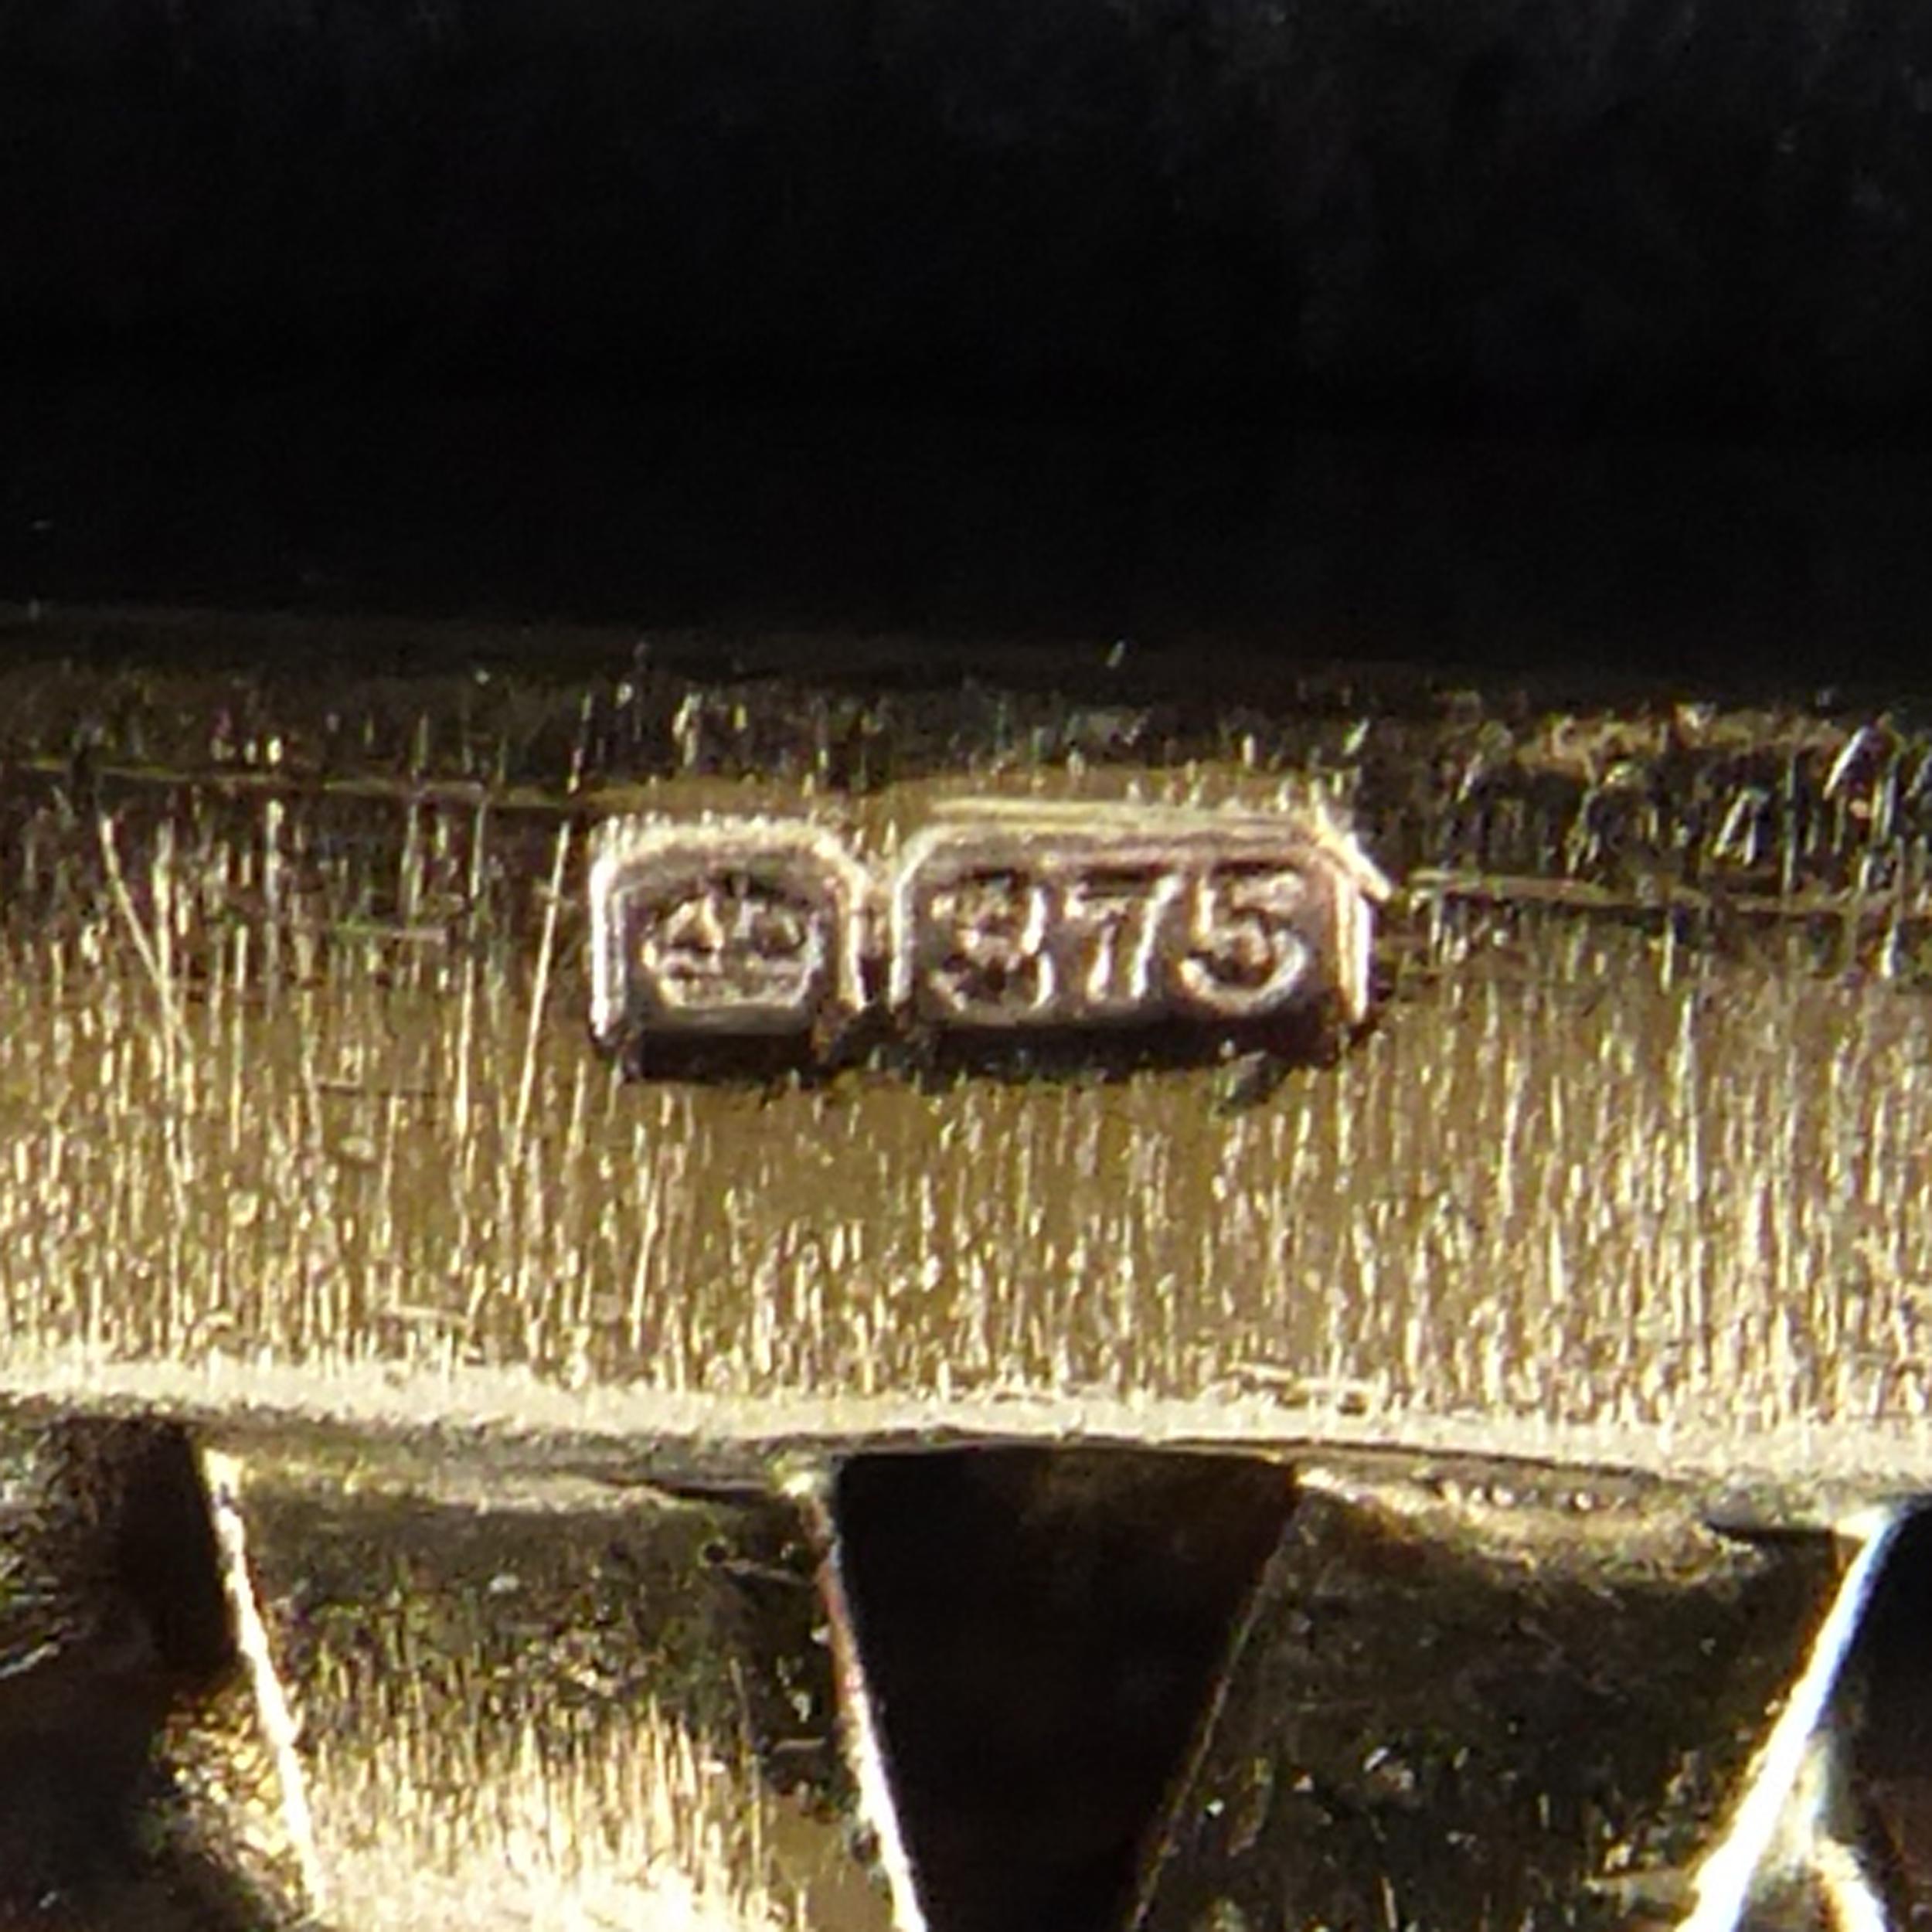 Vintage Gold Belt Bracelet with Mesh Design and Buckle Fastener Hallmarked 1979 3